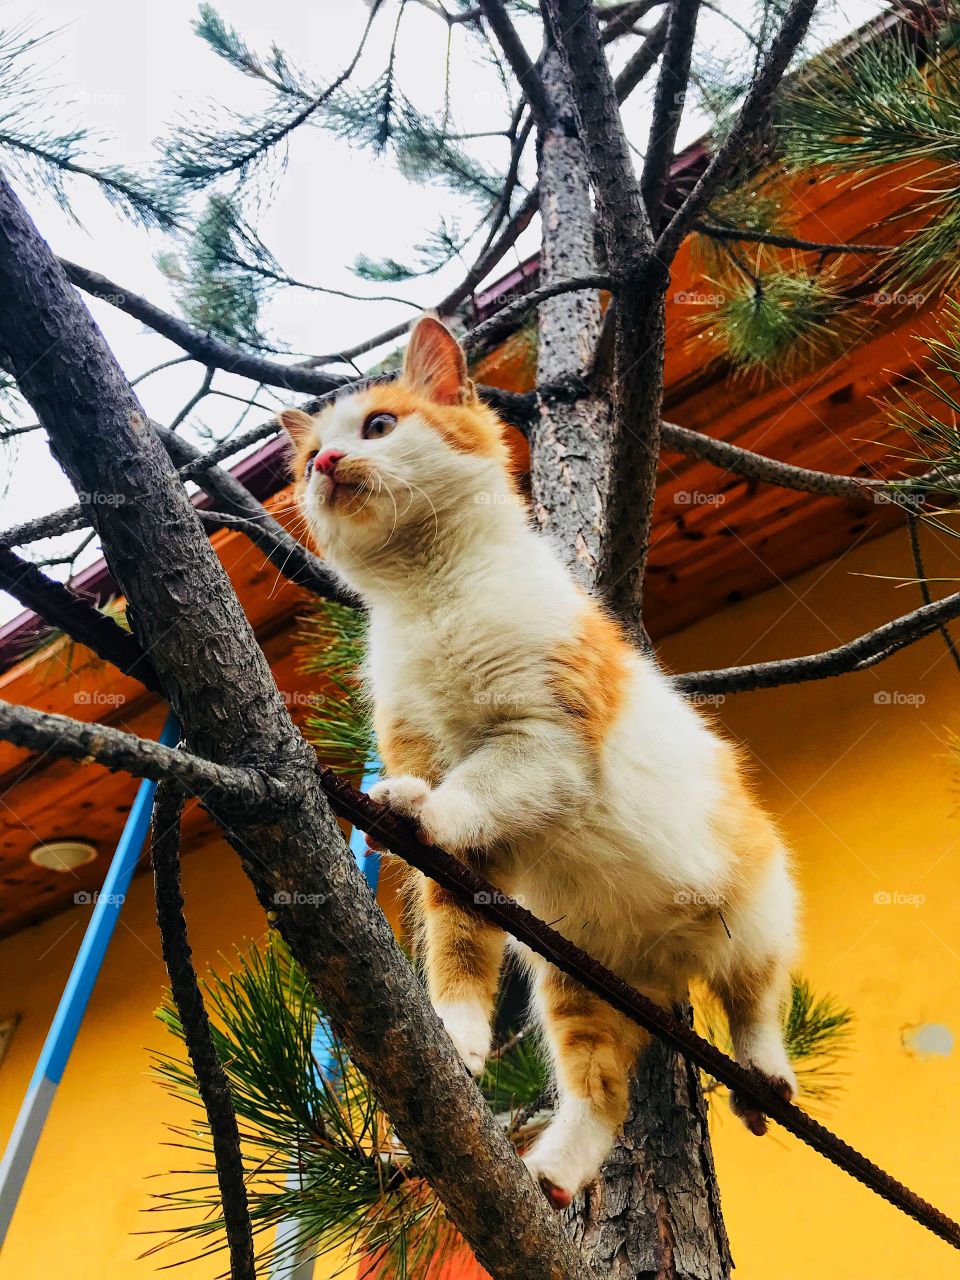 littel kitty on the tree